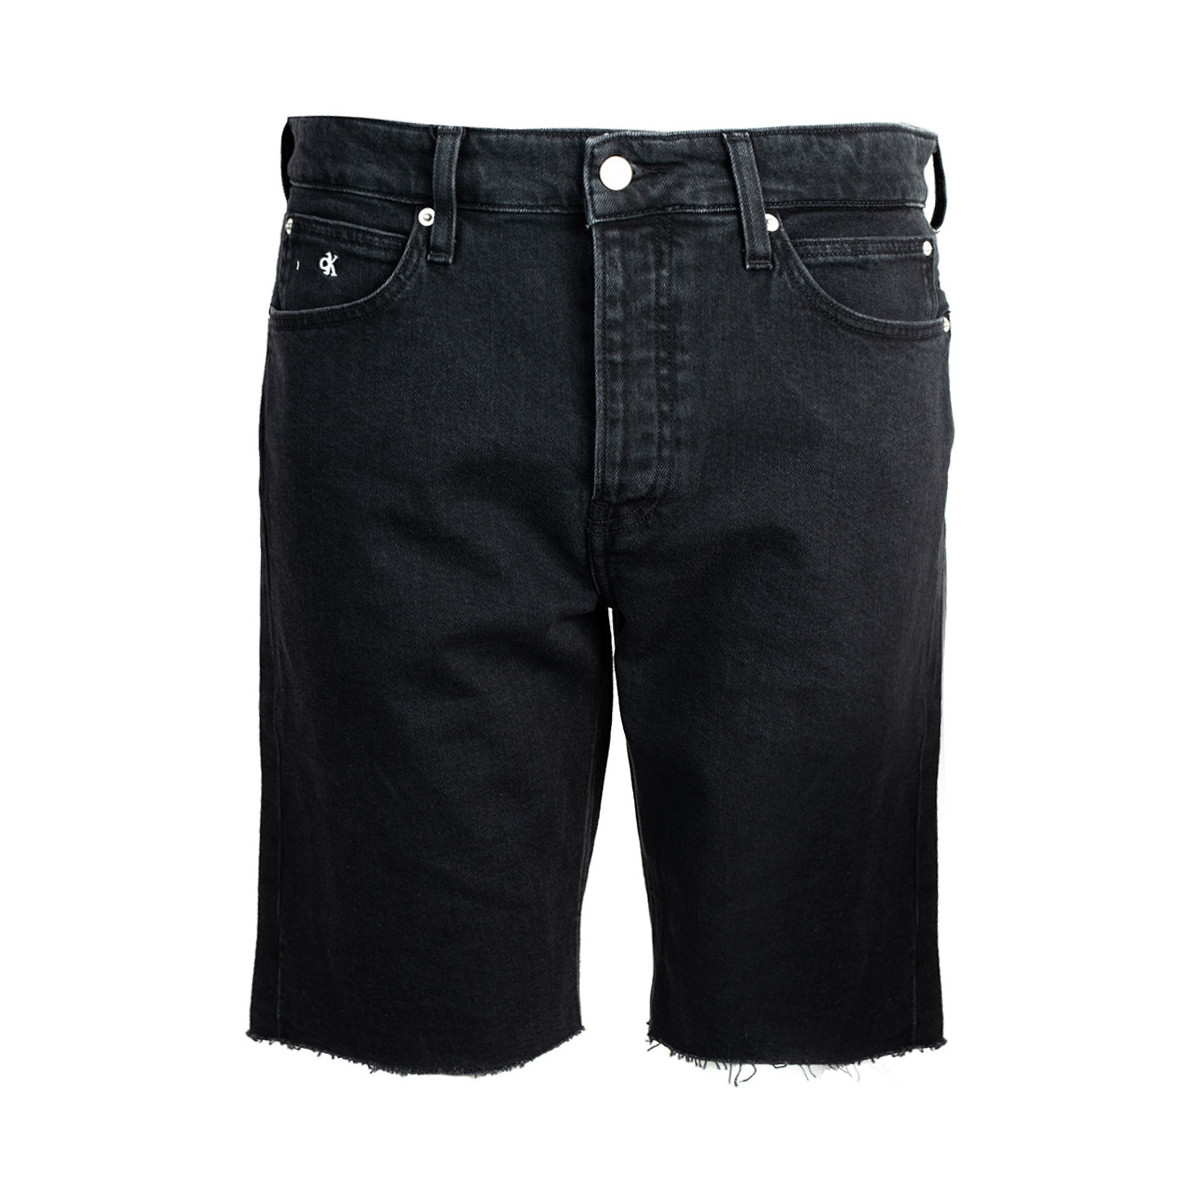 Îmbracaminte Bărbați Pantaloni scurti și Bermuda Calvin Klein Jeans J30J315797 | Regular Short Negru